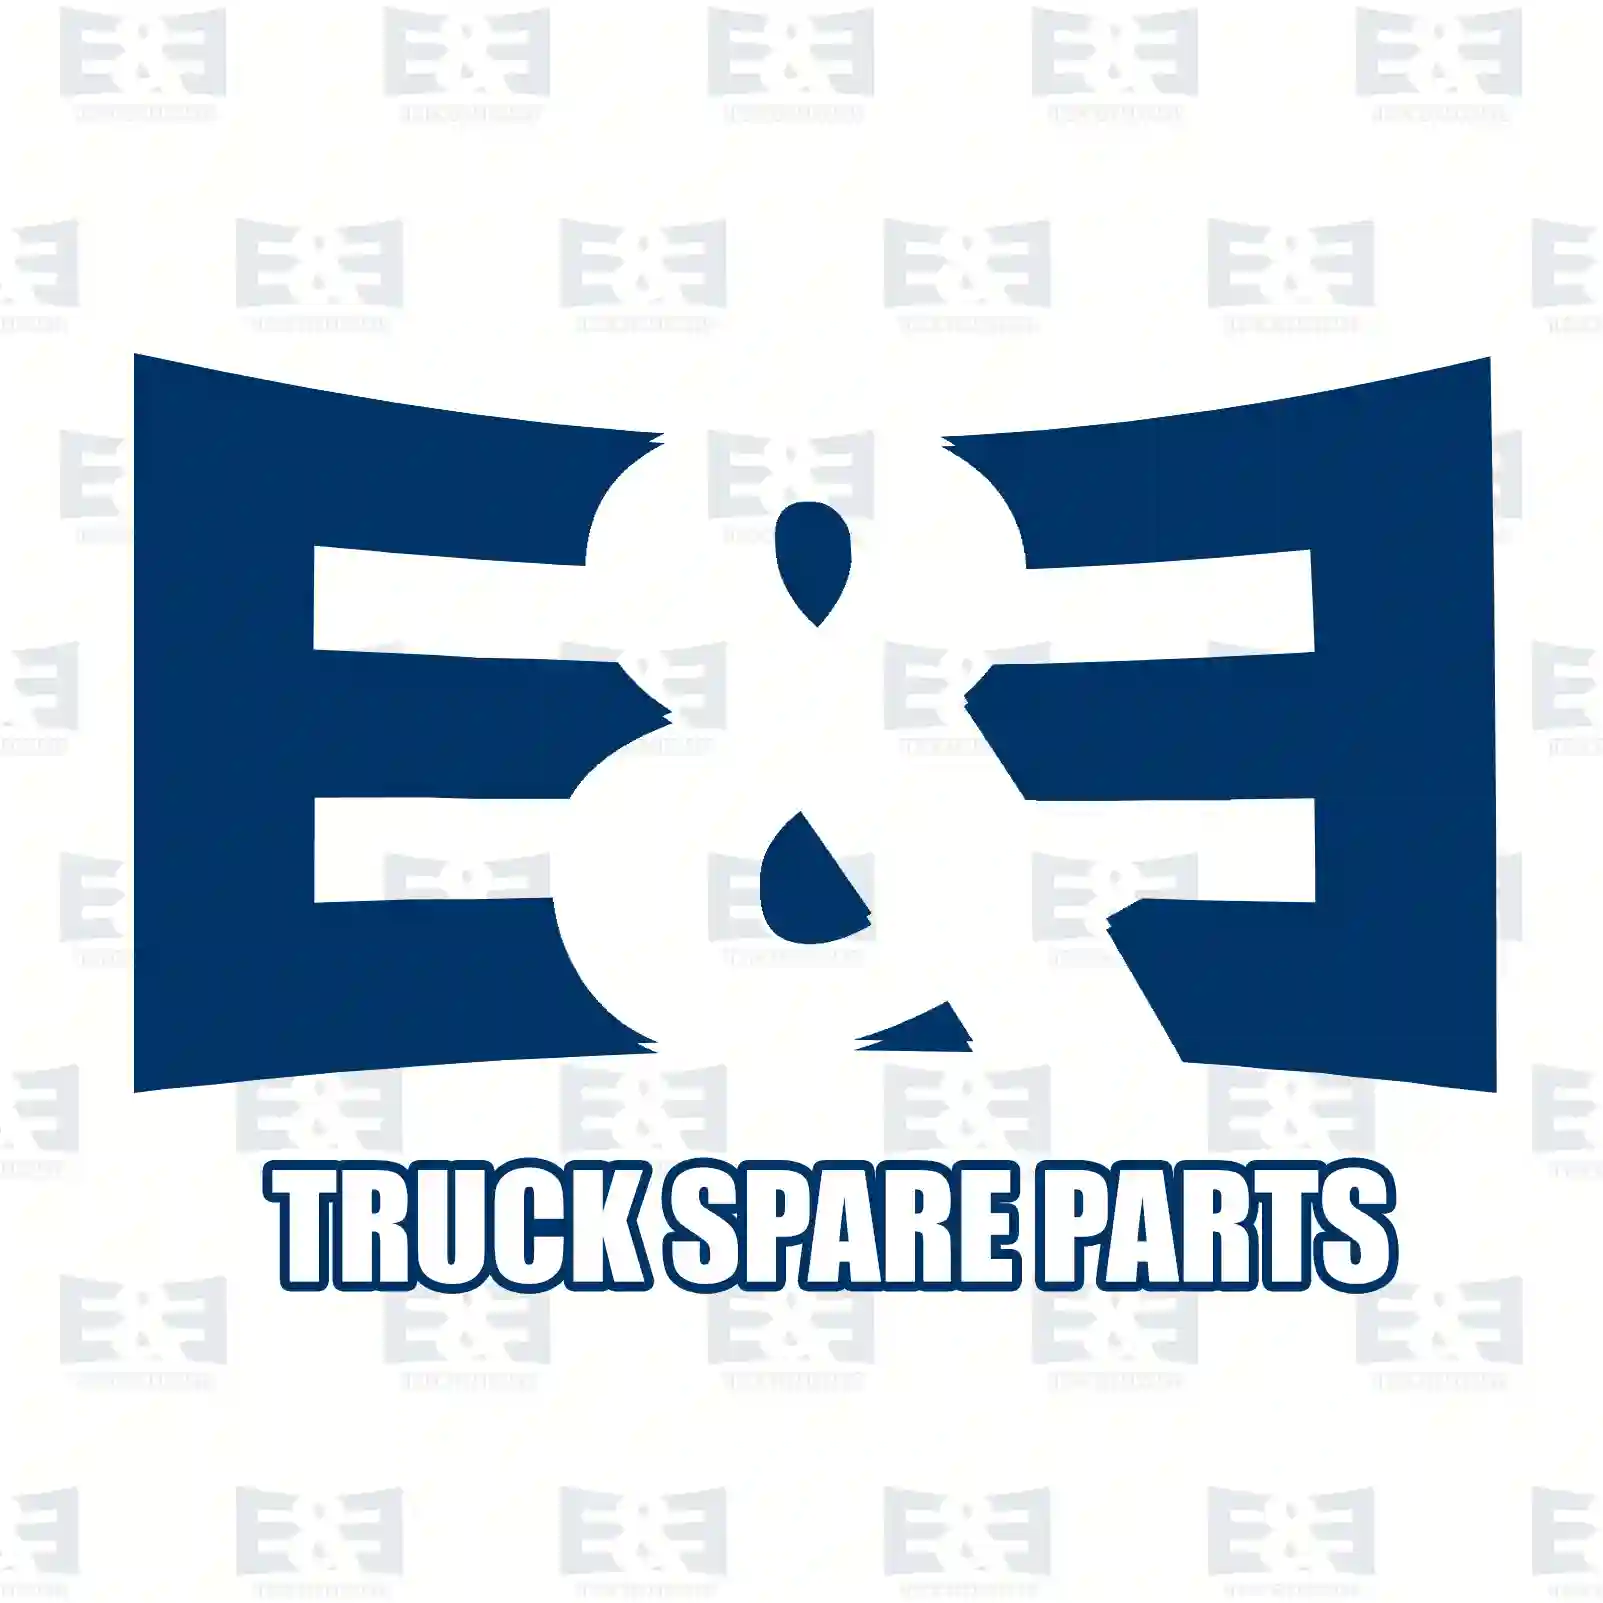 Thermostat kit, 2E2203607, MD997461, 7517345, 8817538, 9397551, 1544098, 15440985, 1544390, 241955, 273052, 273952, 3831424, 467015, 6889652, 7467015, 875849, 876128, ZG00692-0008 ||  2E2203607 E&E Truck Spare Parts | Truck Spare Parts, Auotomotive Spare Parts Thermostat kit, 2E2203607, MD997461, 7517345, 8817538, 9397551, 1544098, 15440985, 1544390, 241955, 273052, 273952, 3831424, 467015, 6889652, 7467015, 875849, 876128, ZG00692-0008 ||  2E2203607 E&E Truck Spare Parts | Truck Spare Parts, Auotomotive Spare Parts